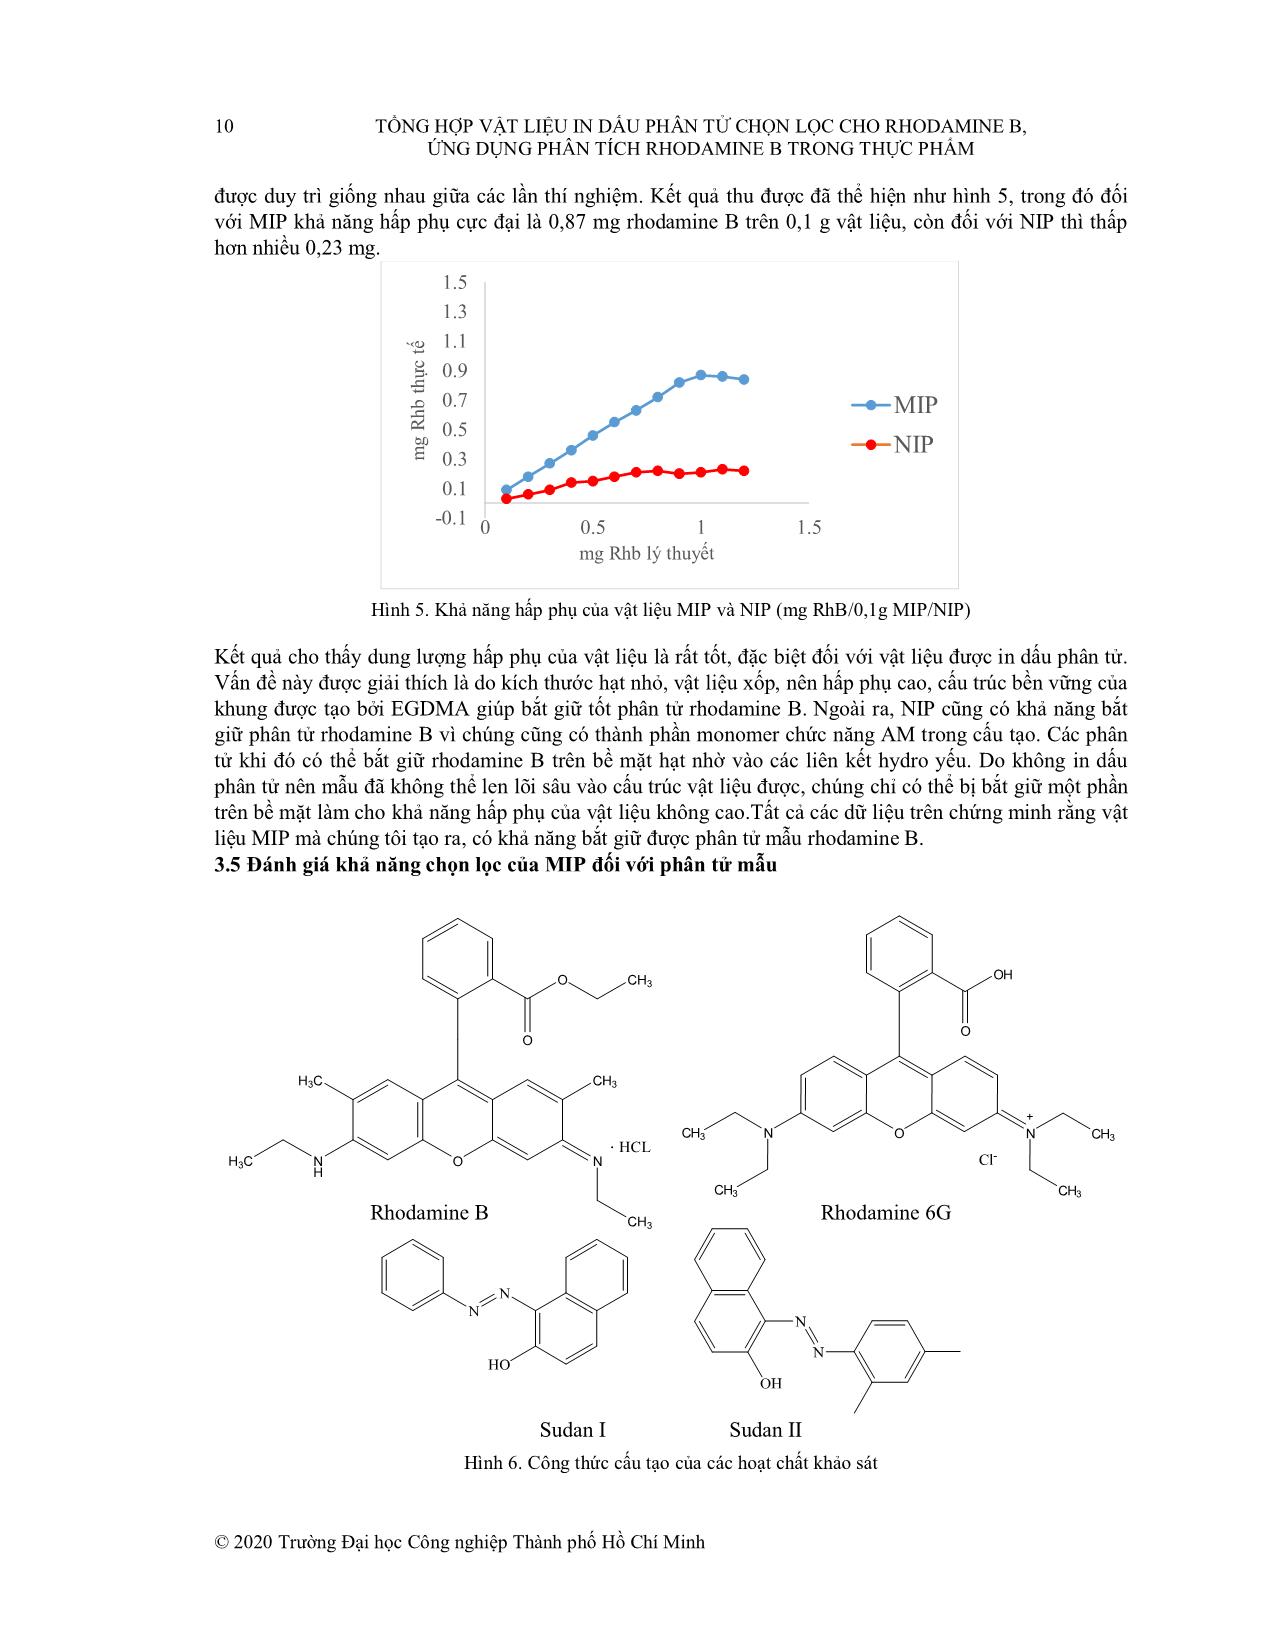 Tổng hợp vật liệu in dấu phân tử chọn lọc cho rhodamine B, ứng dụng phân tích rhodamine b trong thực phẩm trang 6